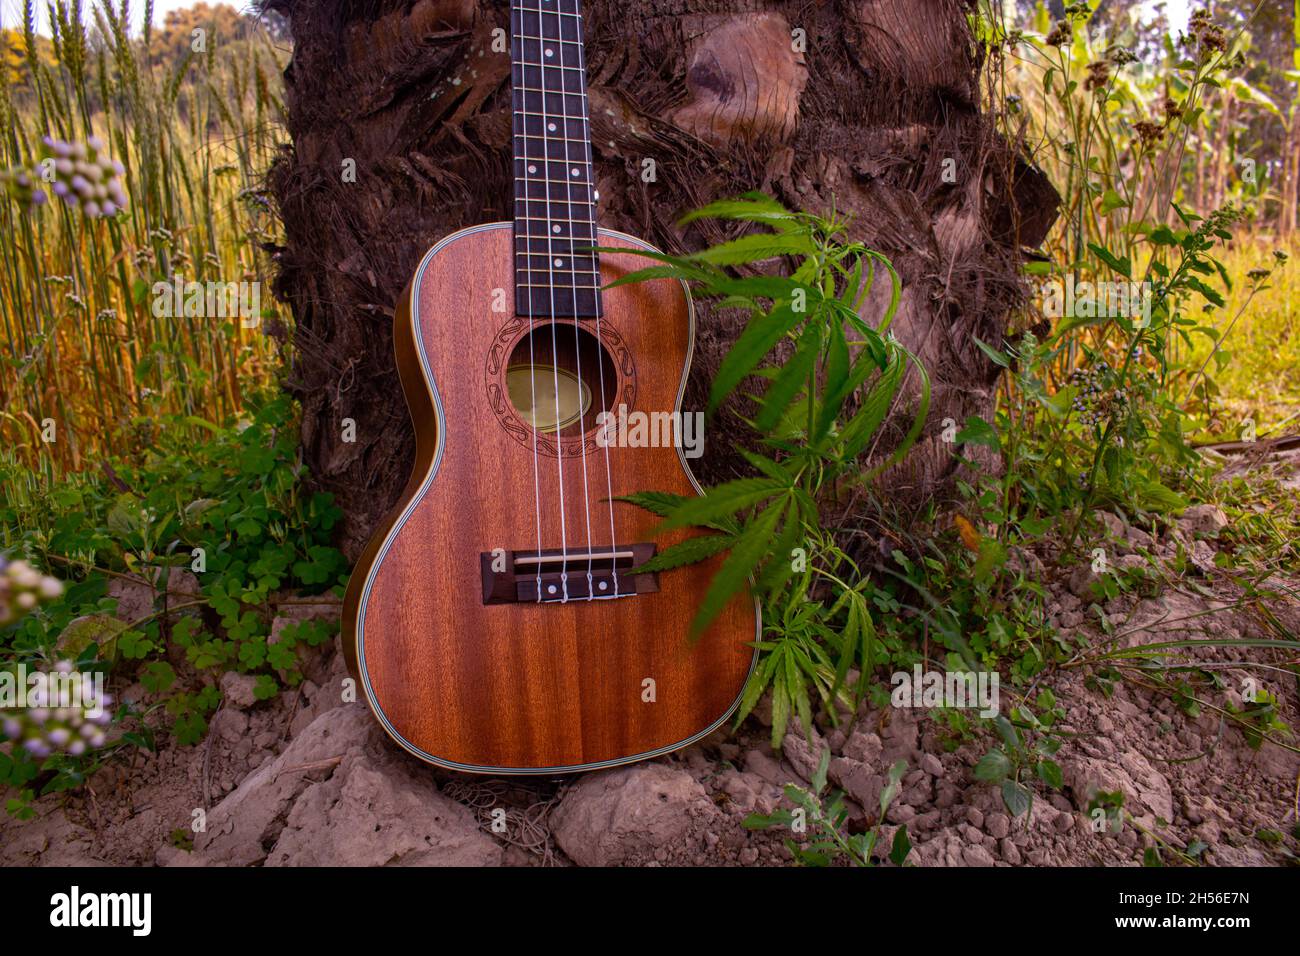 Lied mit Marihuana. Ukulele singt Lieder mit der Natur. Grüne Blätter von Cannabis neben einer Gitarre. Stockfoto